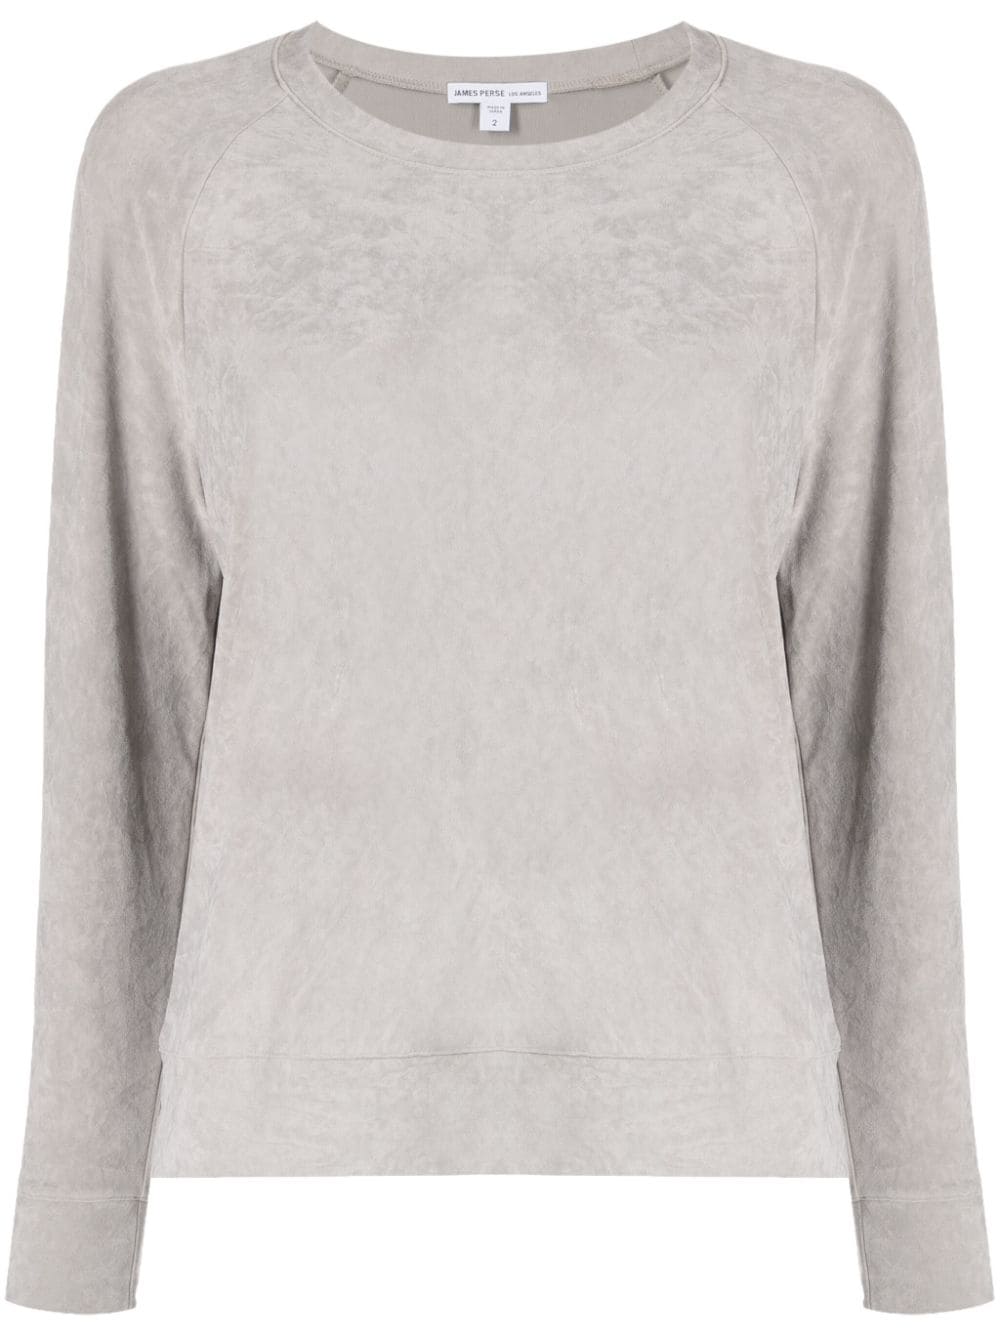 Image 1 of James Perse long-sleeve velvet sweatshirt